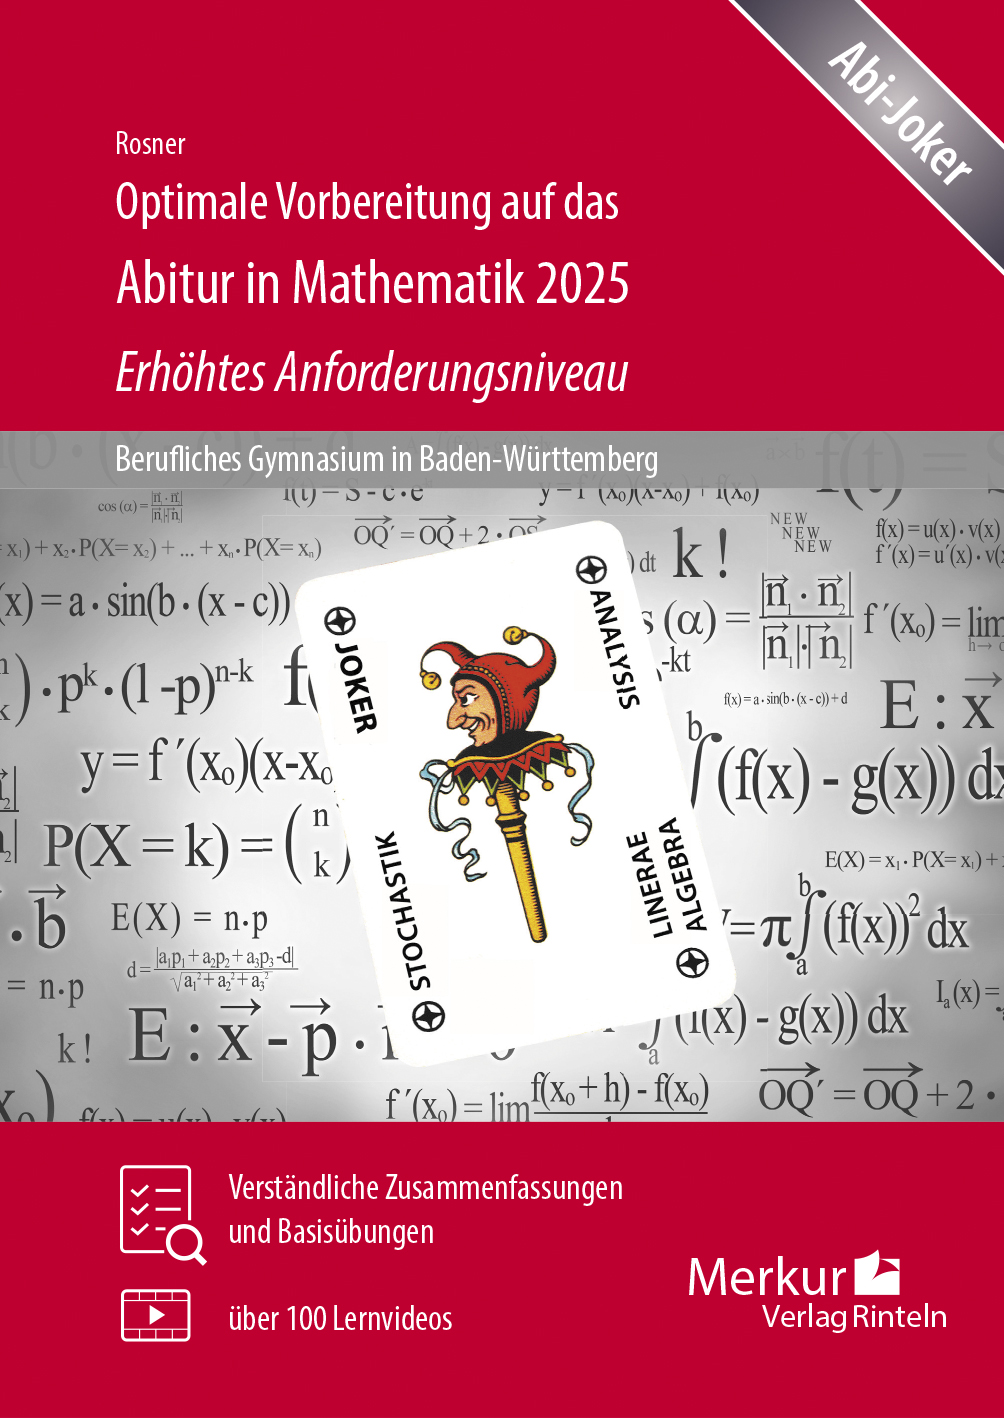 Optimale Vorbereitung auf das Abitur in Mathematik 2025 - Erhöhtes Anforderungsniveau